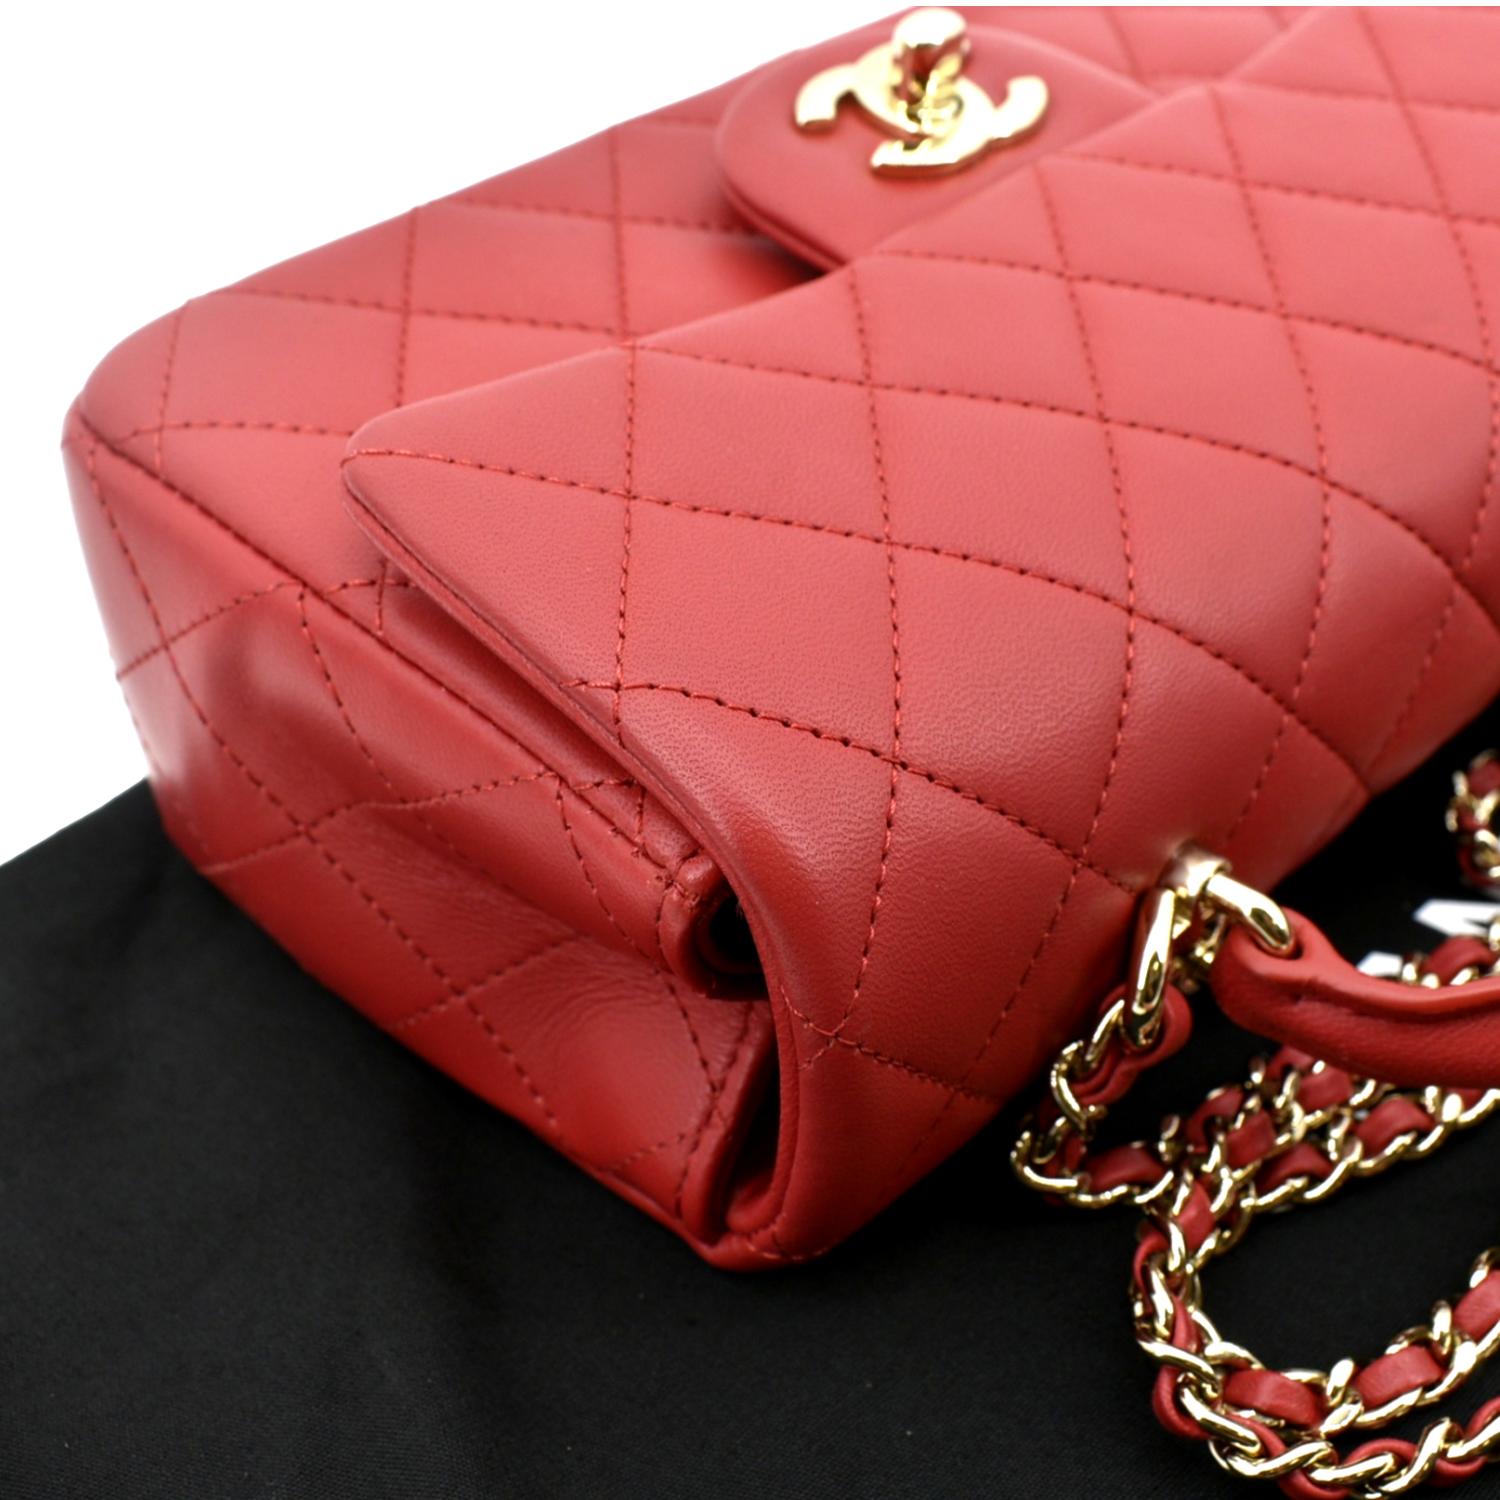 Luxury Goods - Handbags - The Happy Coin